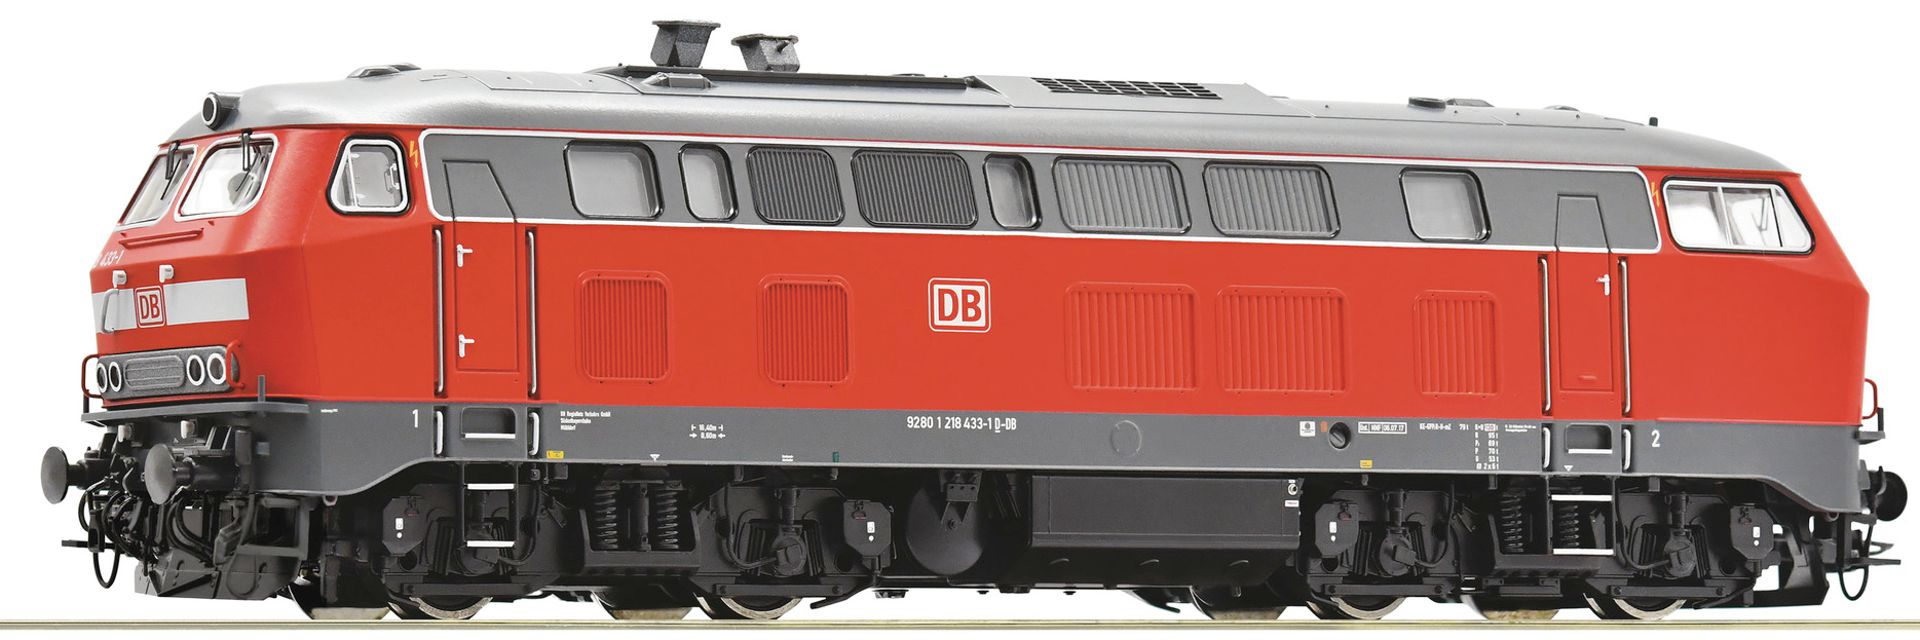 Roco 7310053 - Diesellok 218 433-1, DBAG, Ep.VI, DC-Sound